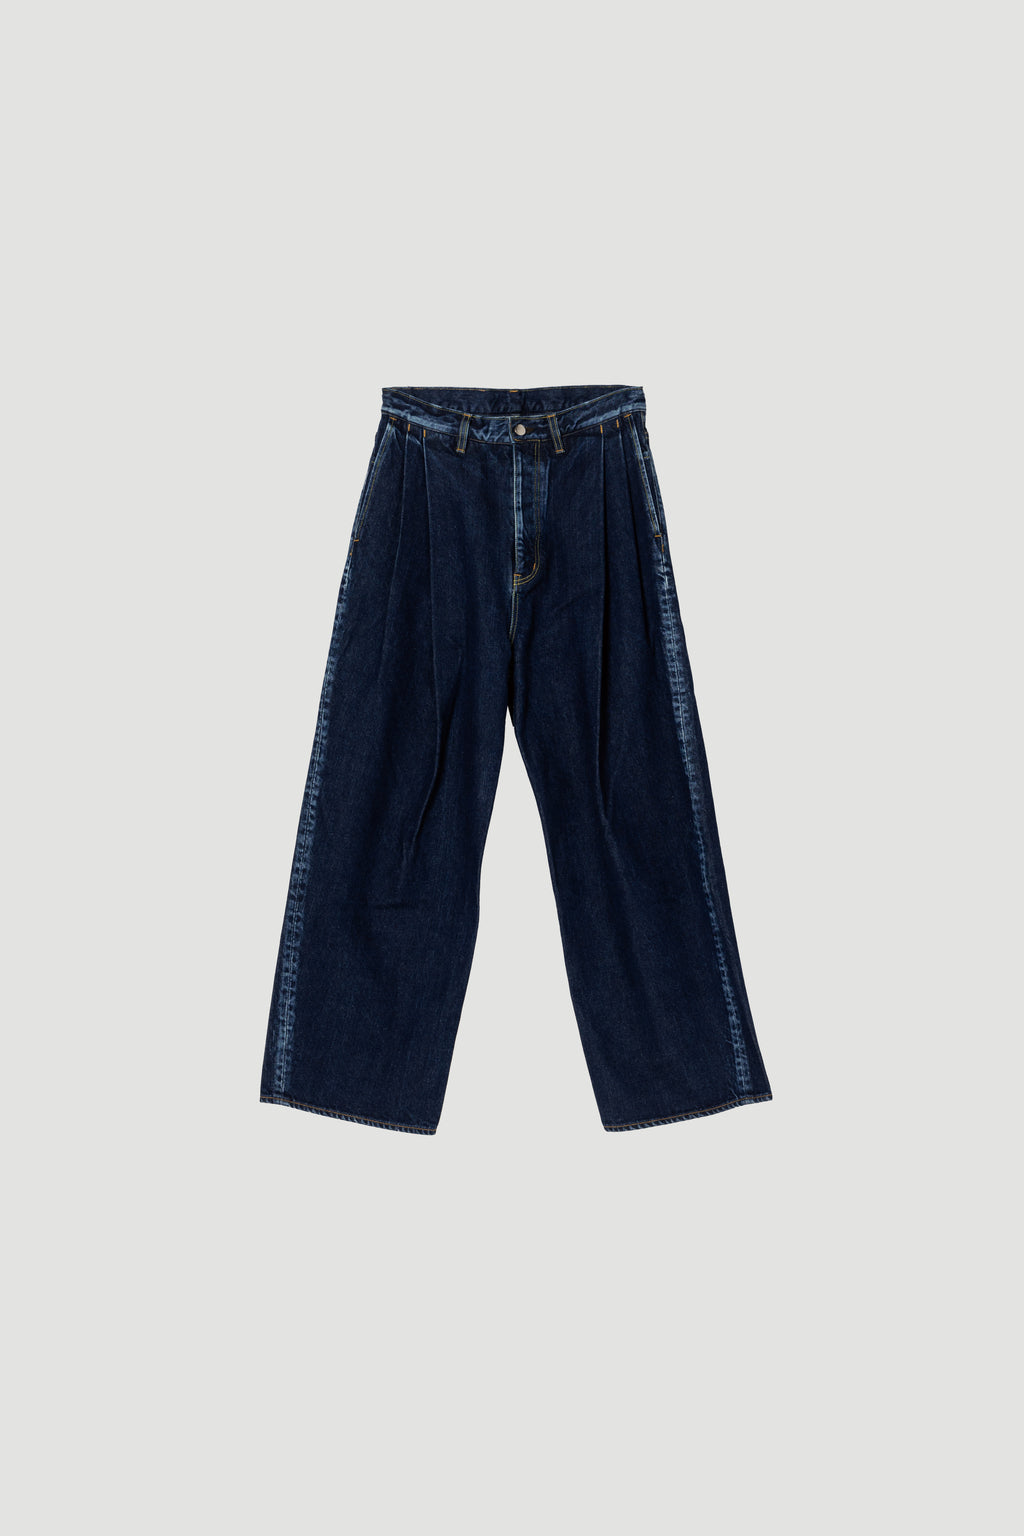 7,056円Cotton/Linen denim 2-tuck wide pants